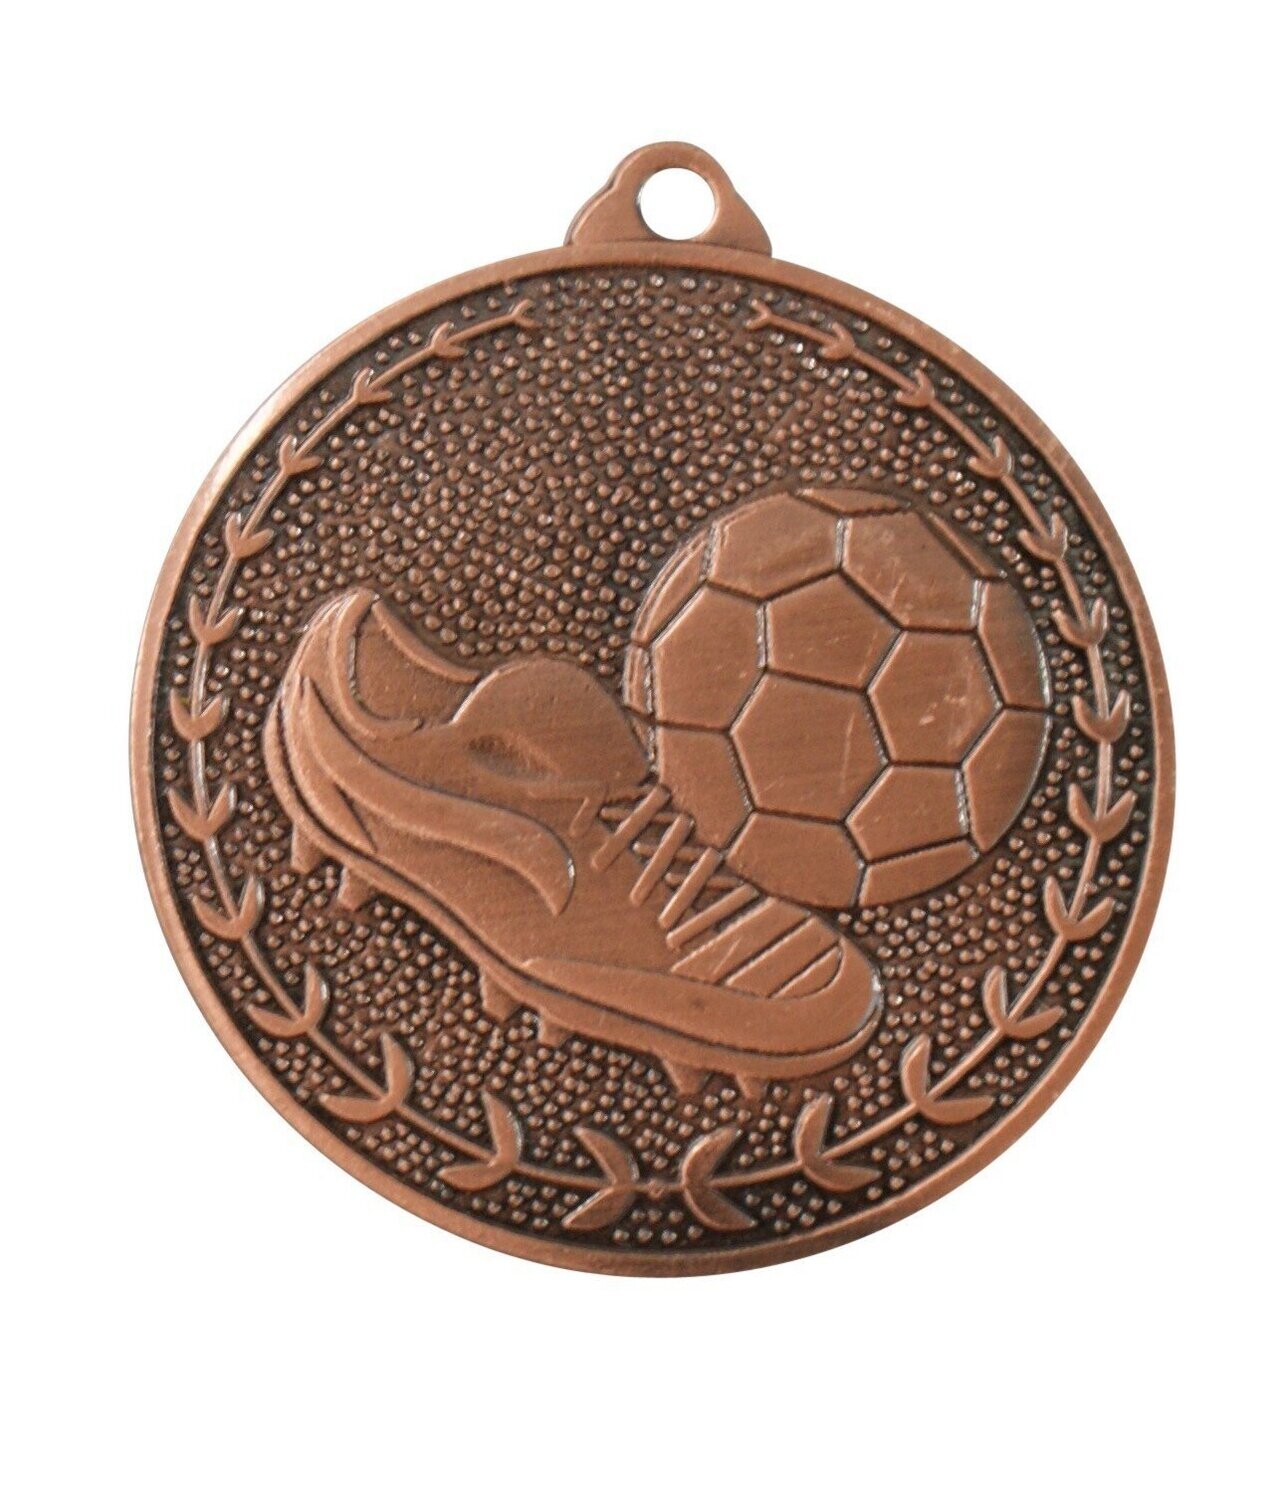 100 Stück Medaille V32 Fußball Kupfer- Lose inkl. Band